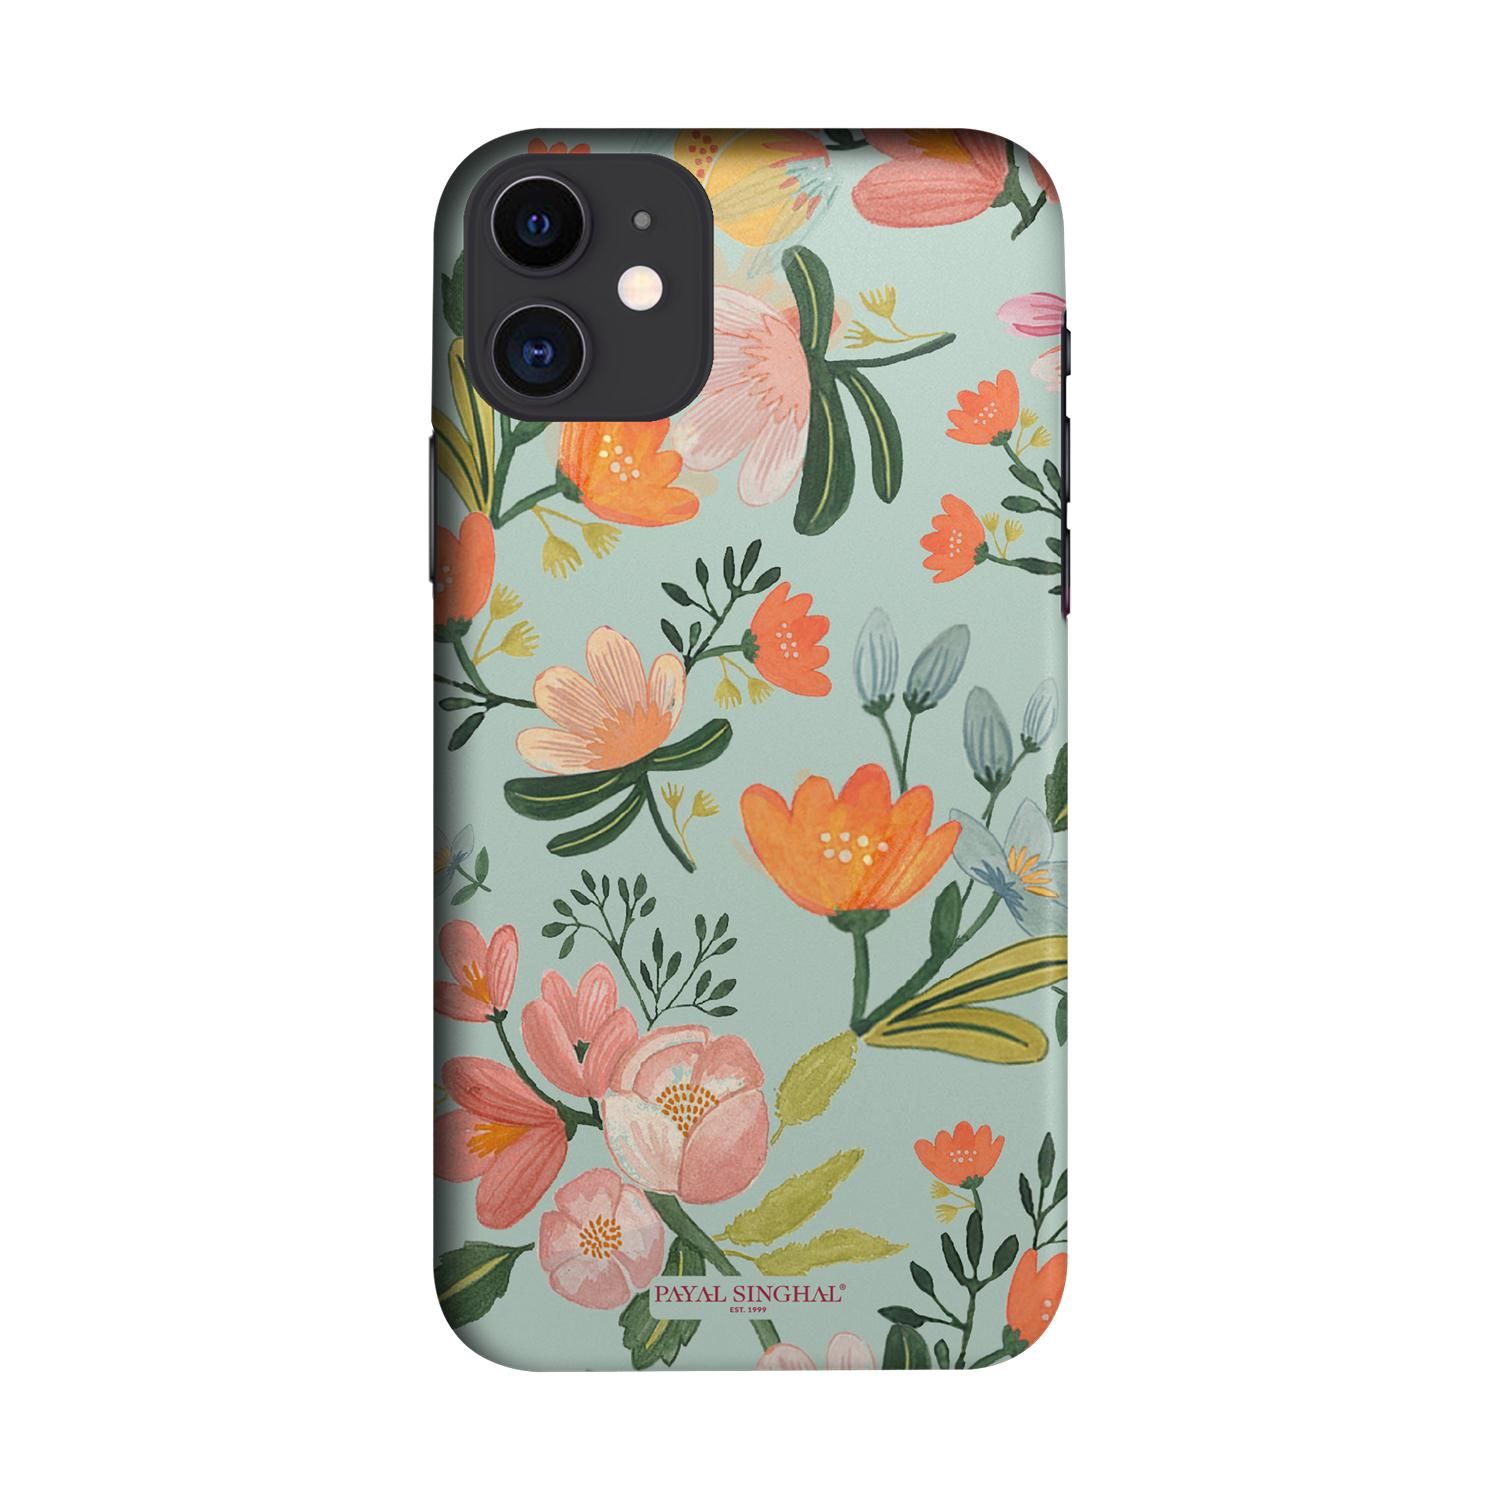 Buy Payal Singhal Aqua Handpainted Flower - Sleek Phone Case for iPhone 11 Online